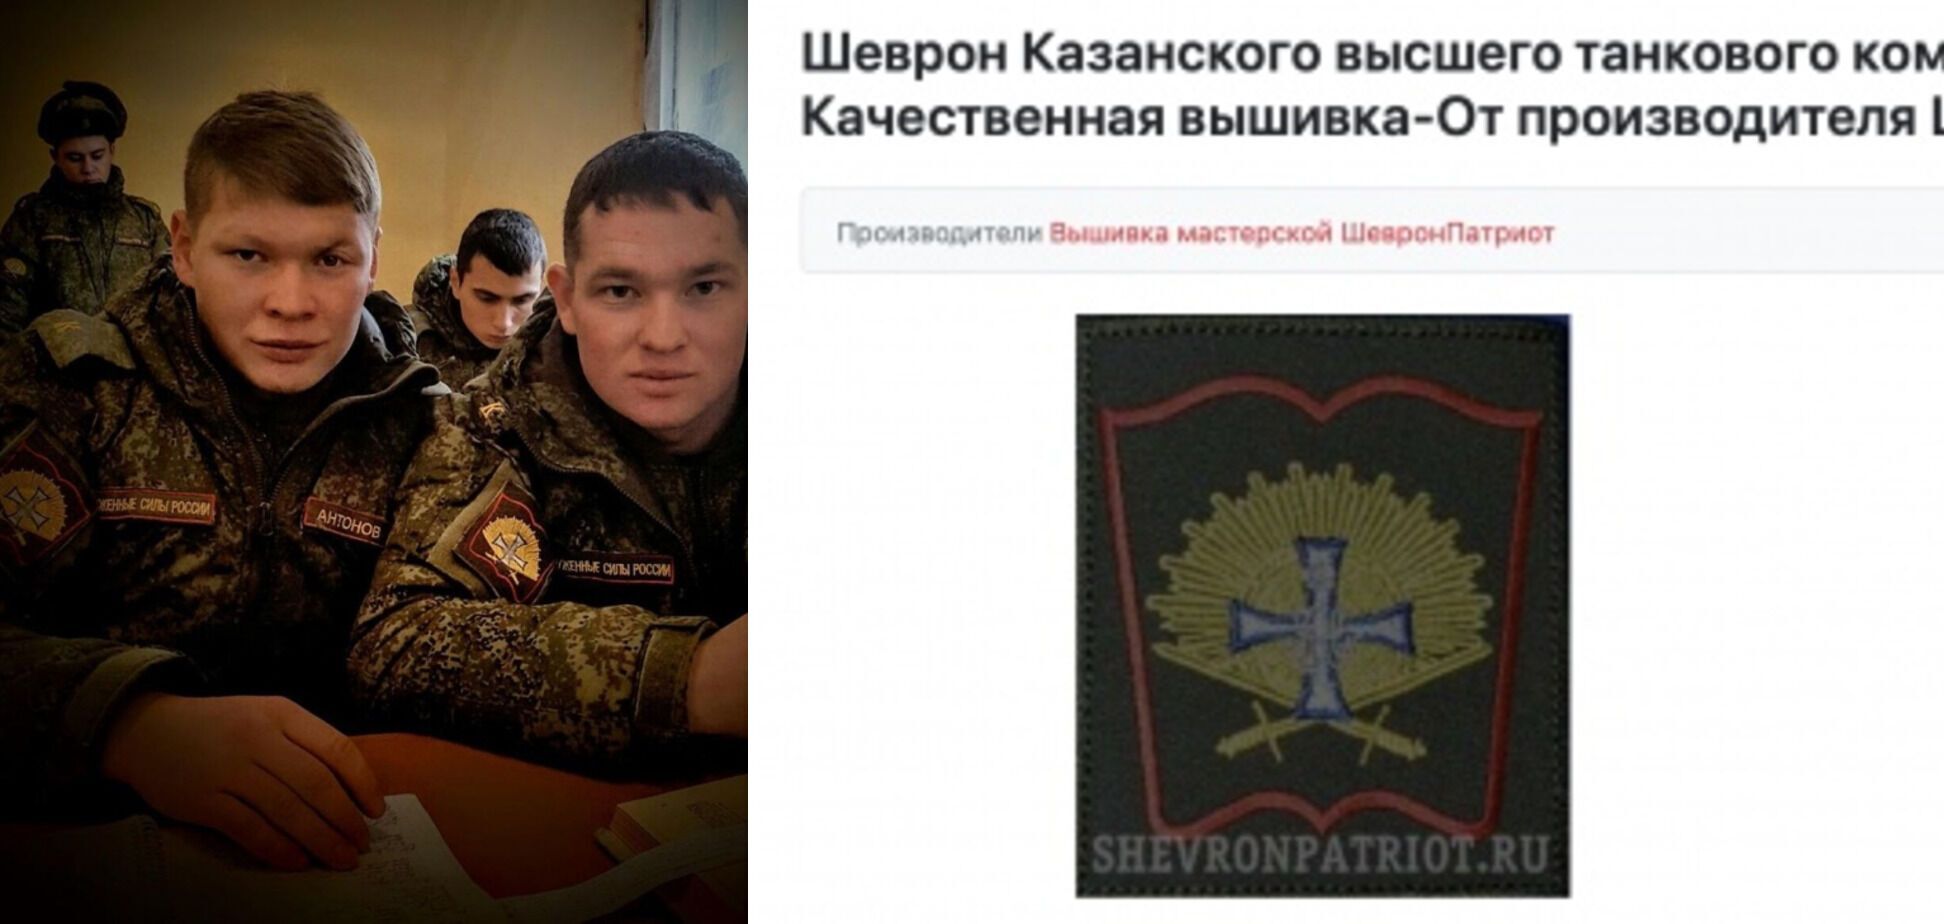 Іванов є випускником Казанського вищого танкового командного училища.